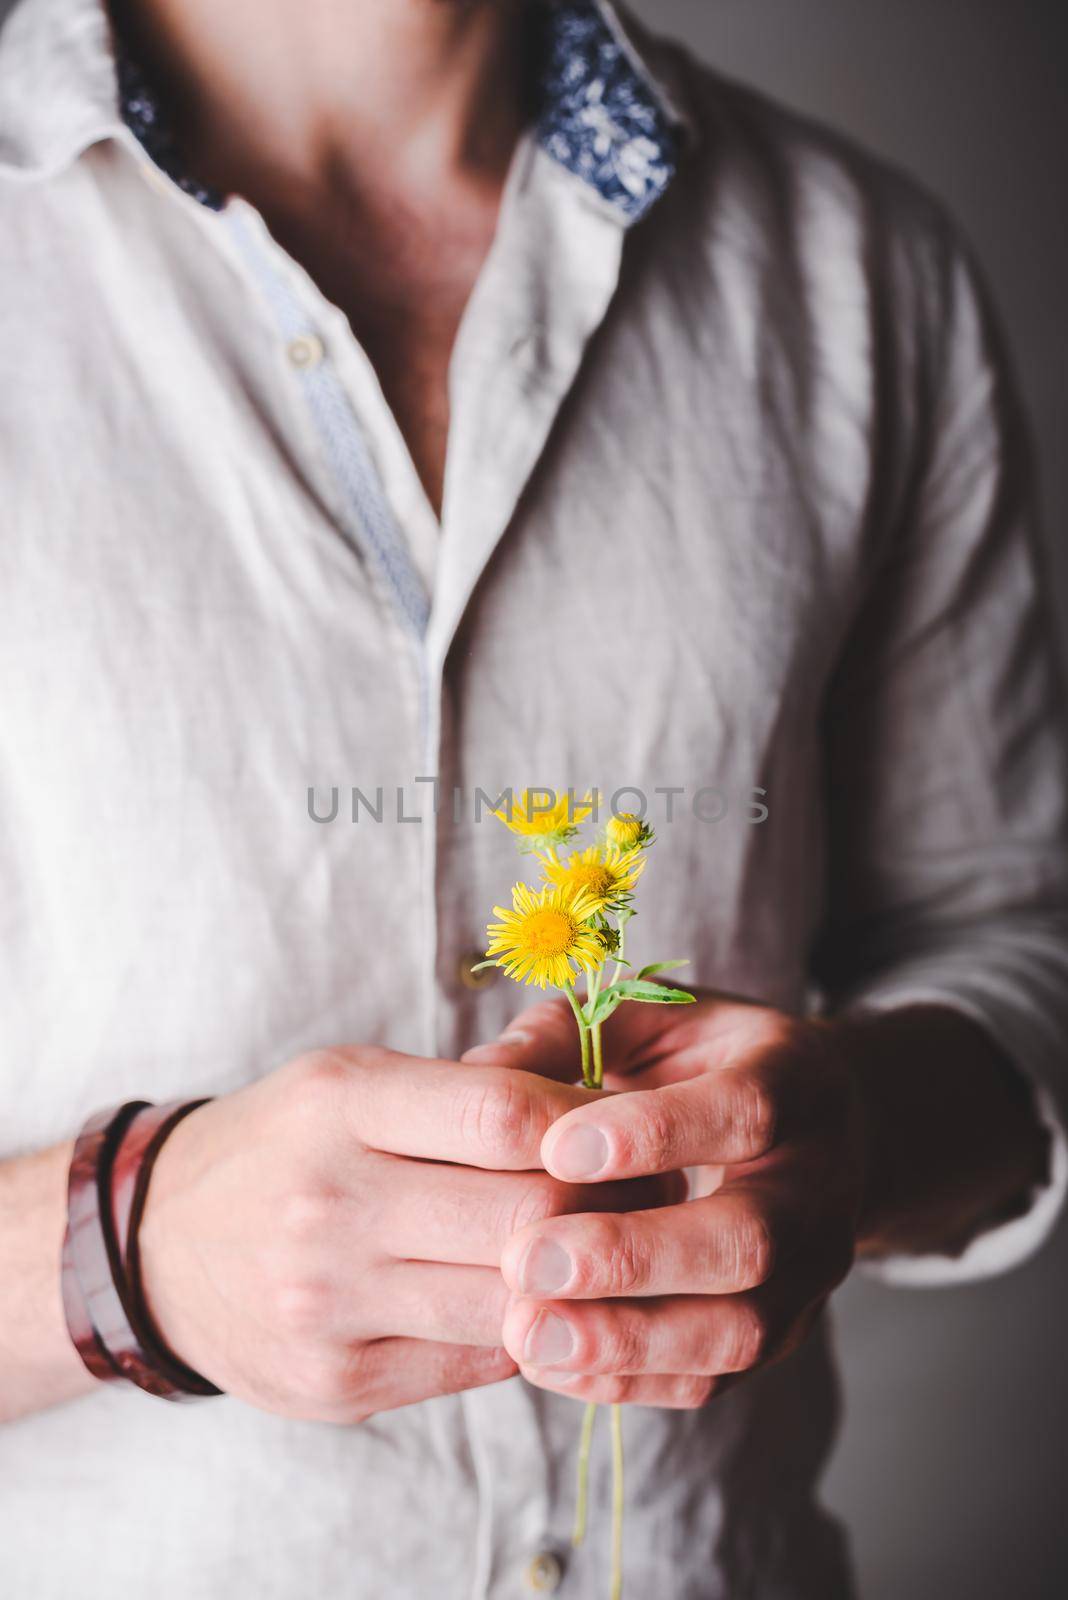 Daisy Flowers in Male Hands by Seva_blsv